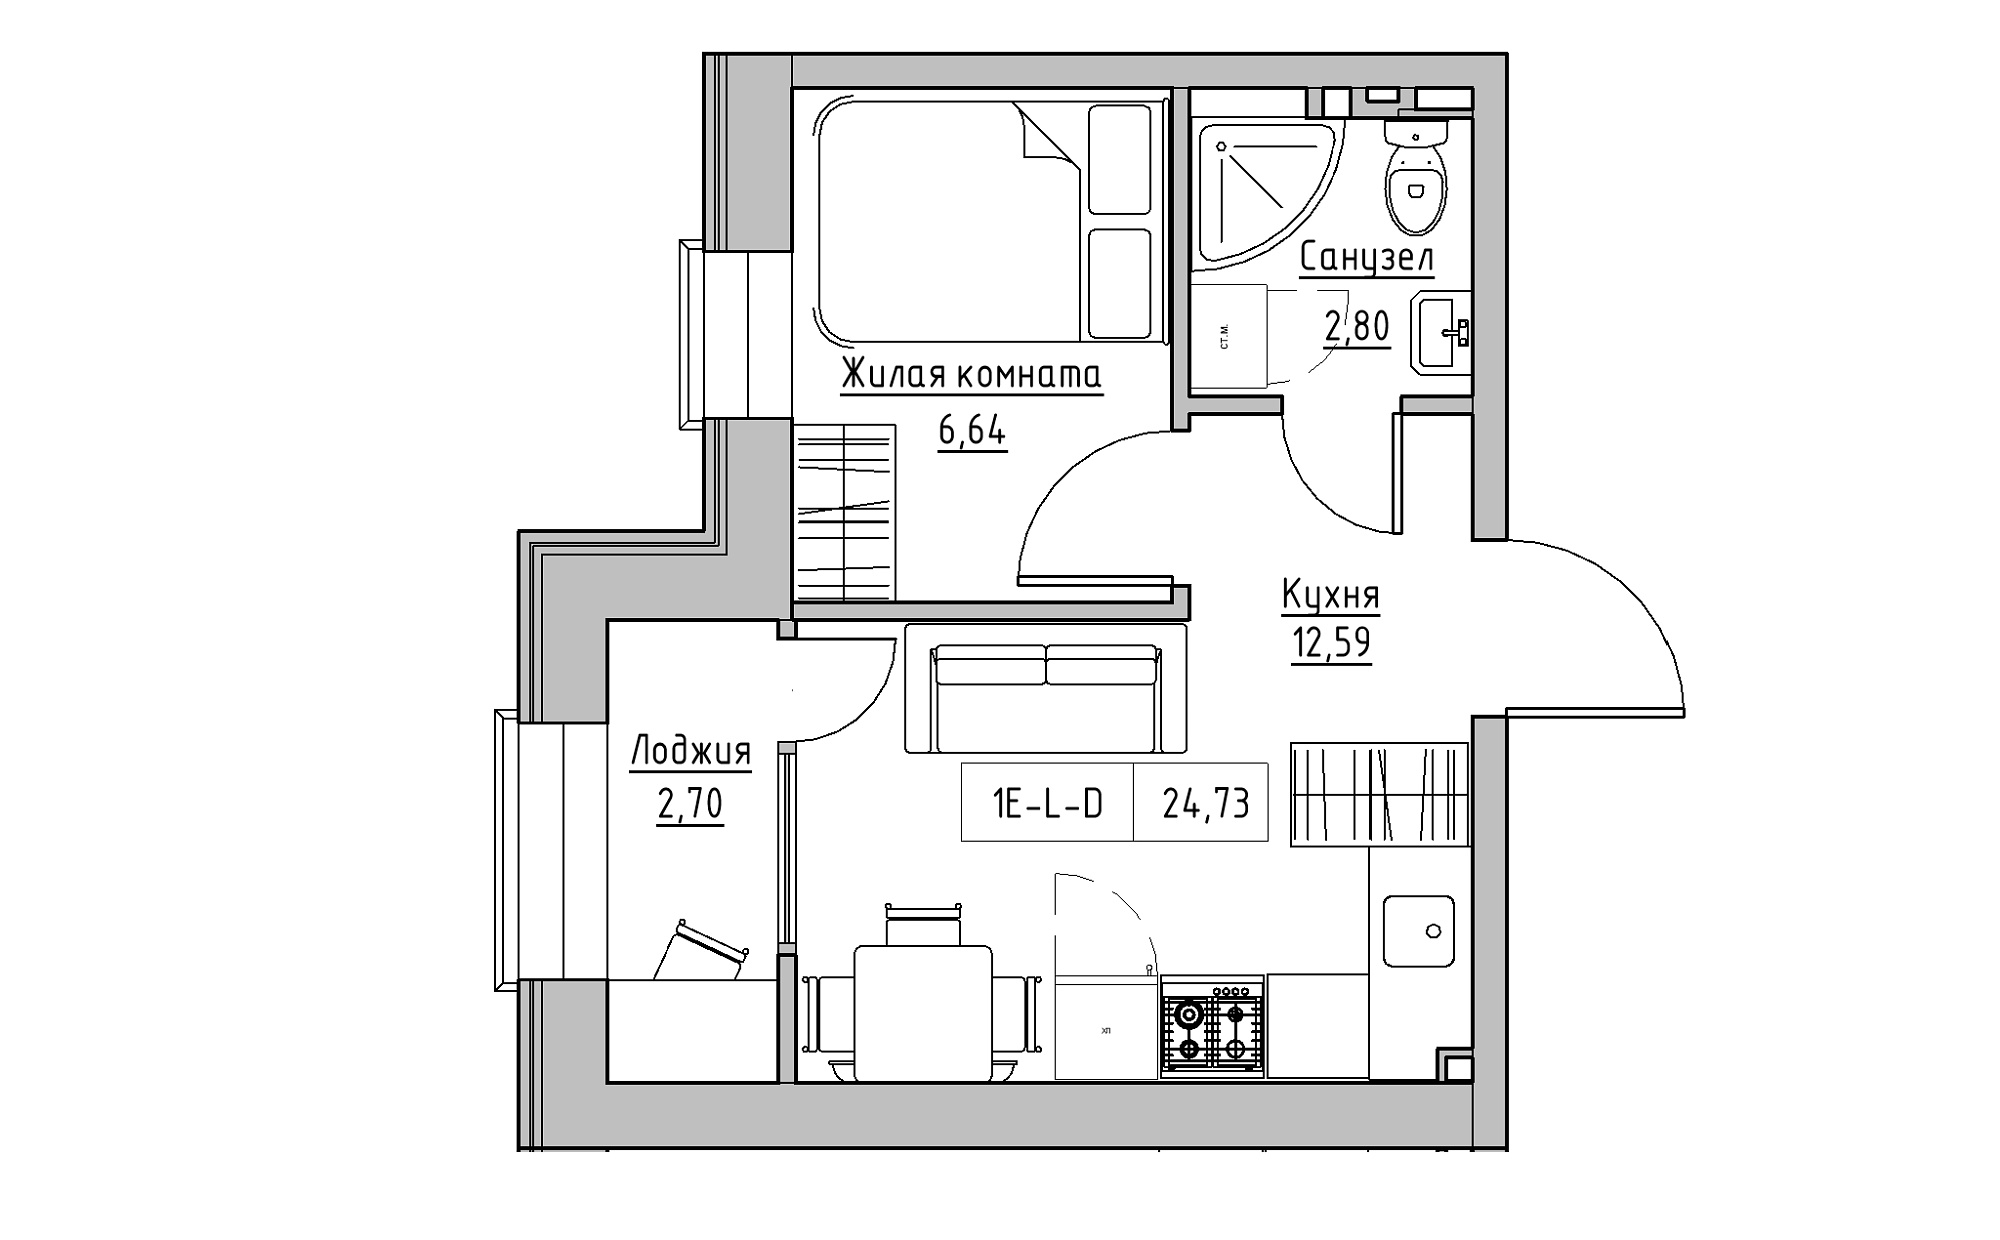 Планировка 1-к квартира площей 24.73м2, KS-022-03/0013.